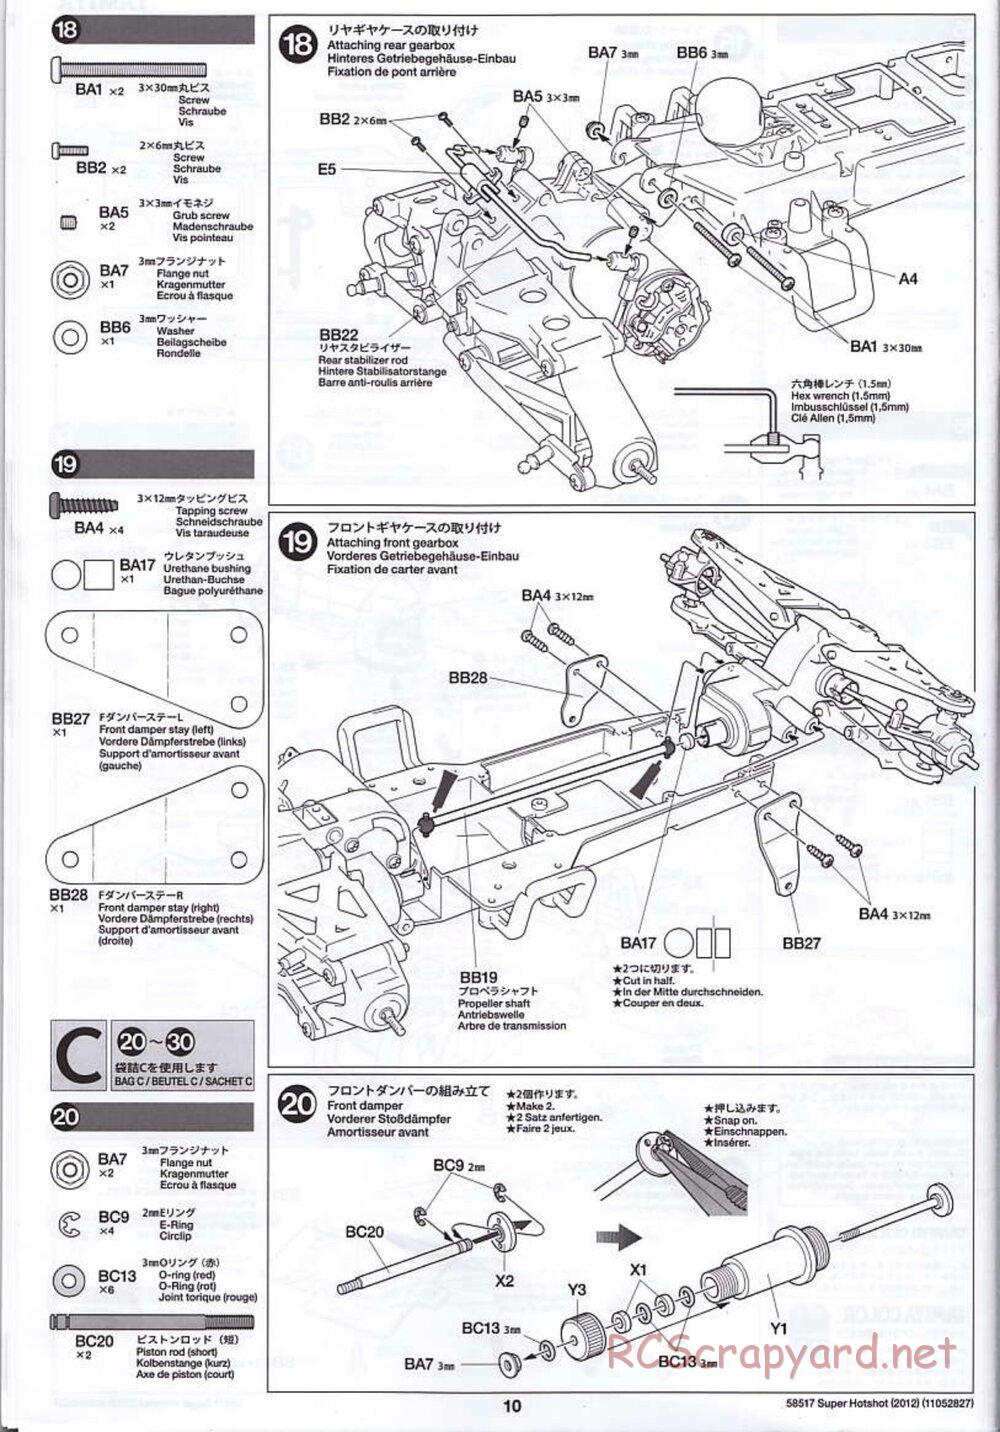 Tamiya - Super Hotshot 2012 - HS Chassis - Manual - Page 10